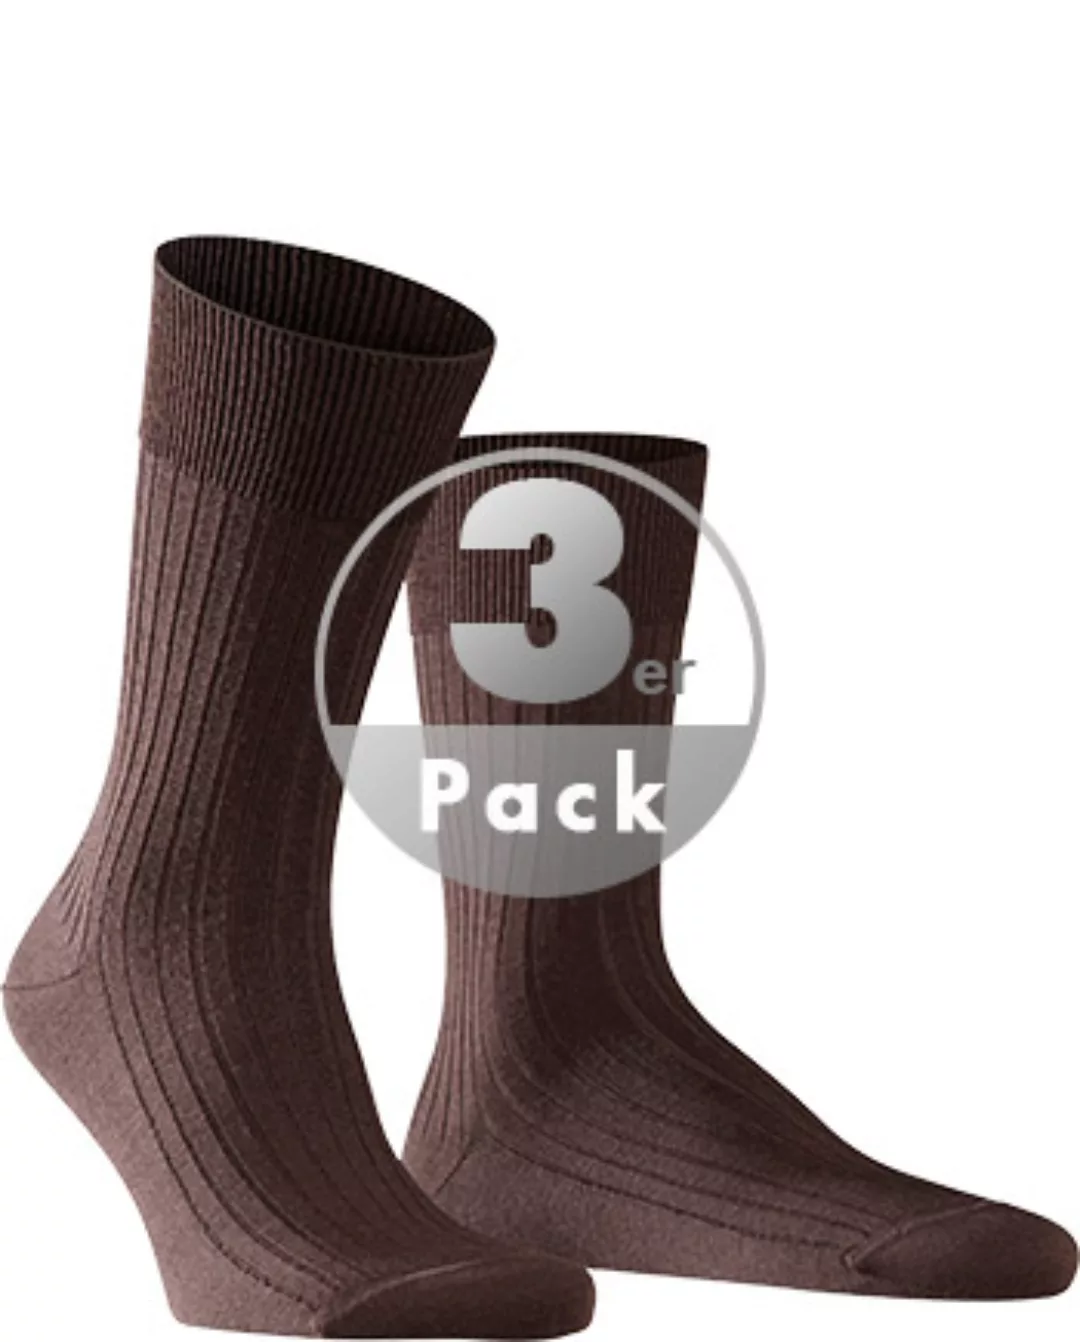 FALKE Bristol Pure Herren Socken, 45-46, Braun, Uni, Schurwolle, 14415-5930 günstig online kaufen